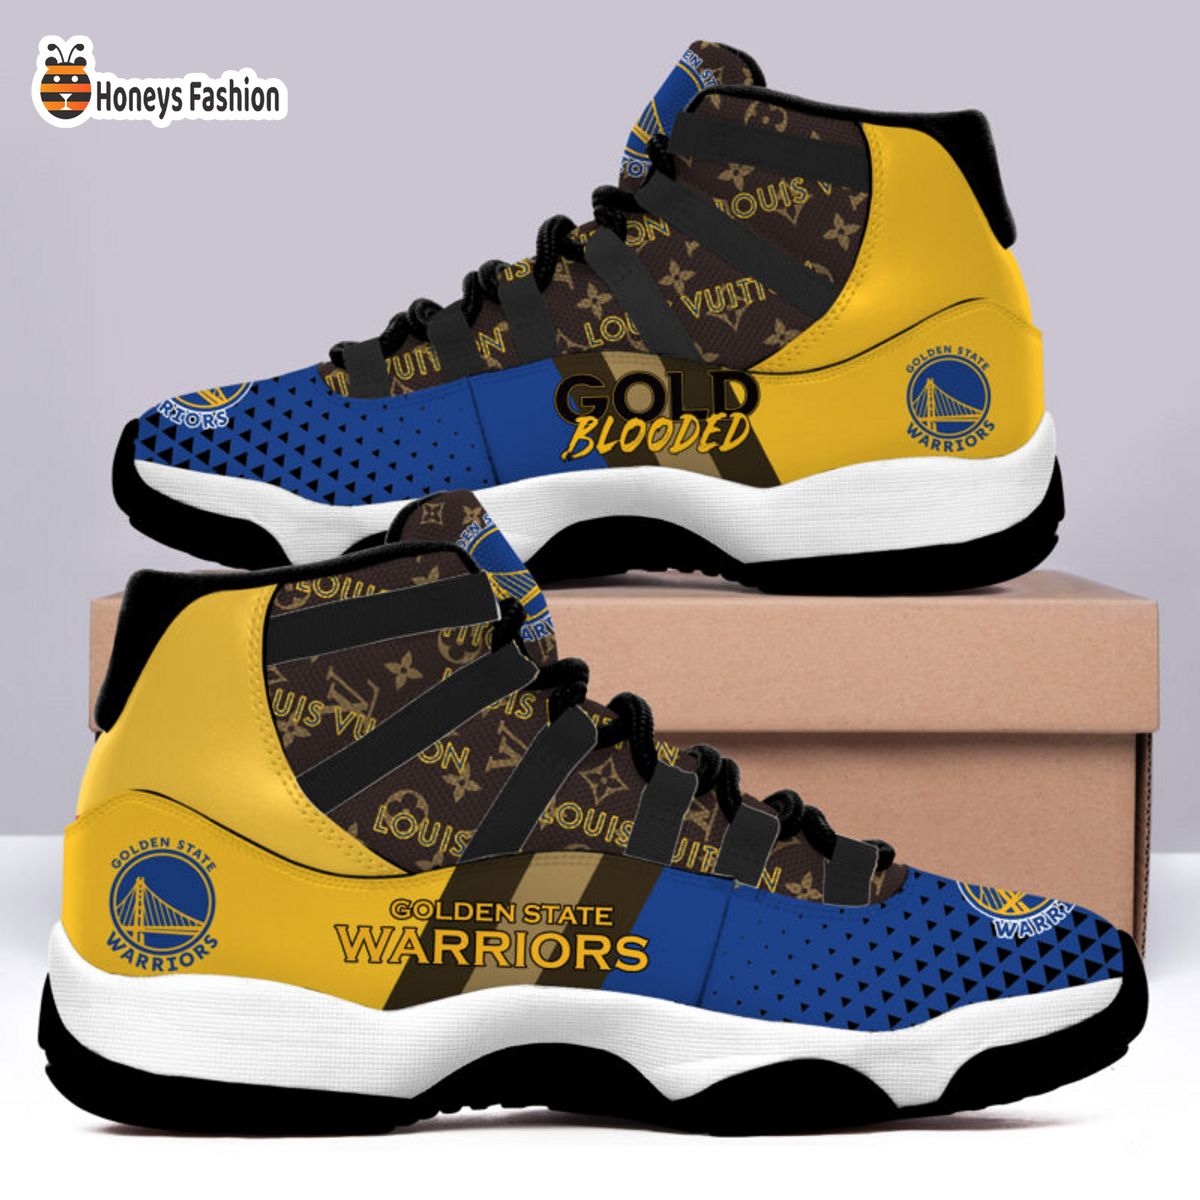 Golden State Warriors x Louis Vuitton Air Jordan 11 Sneaker